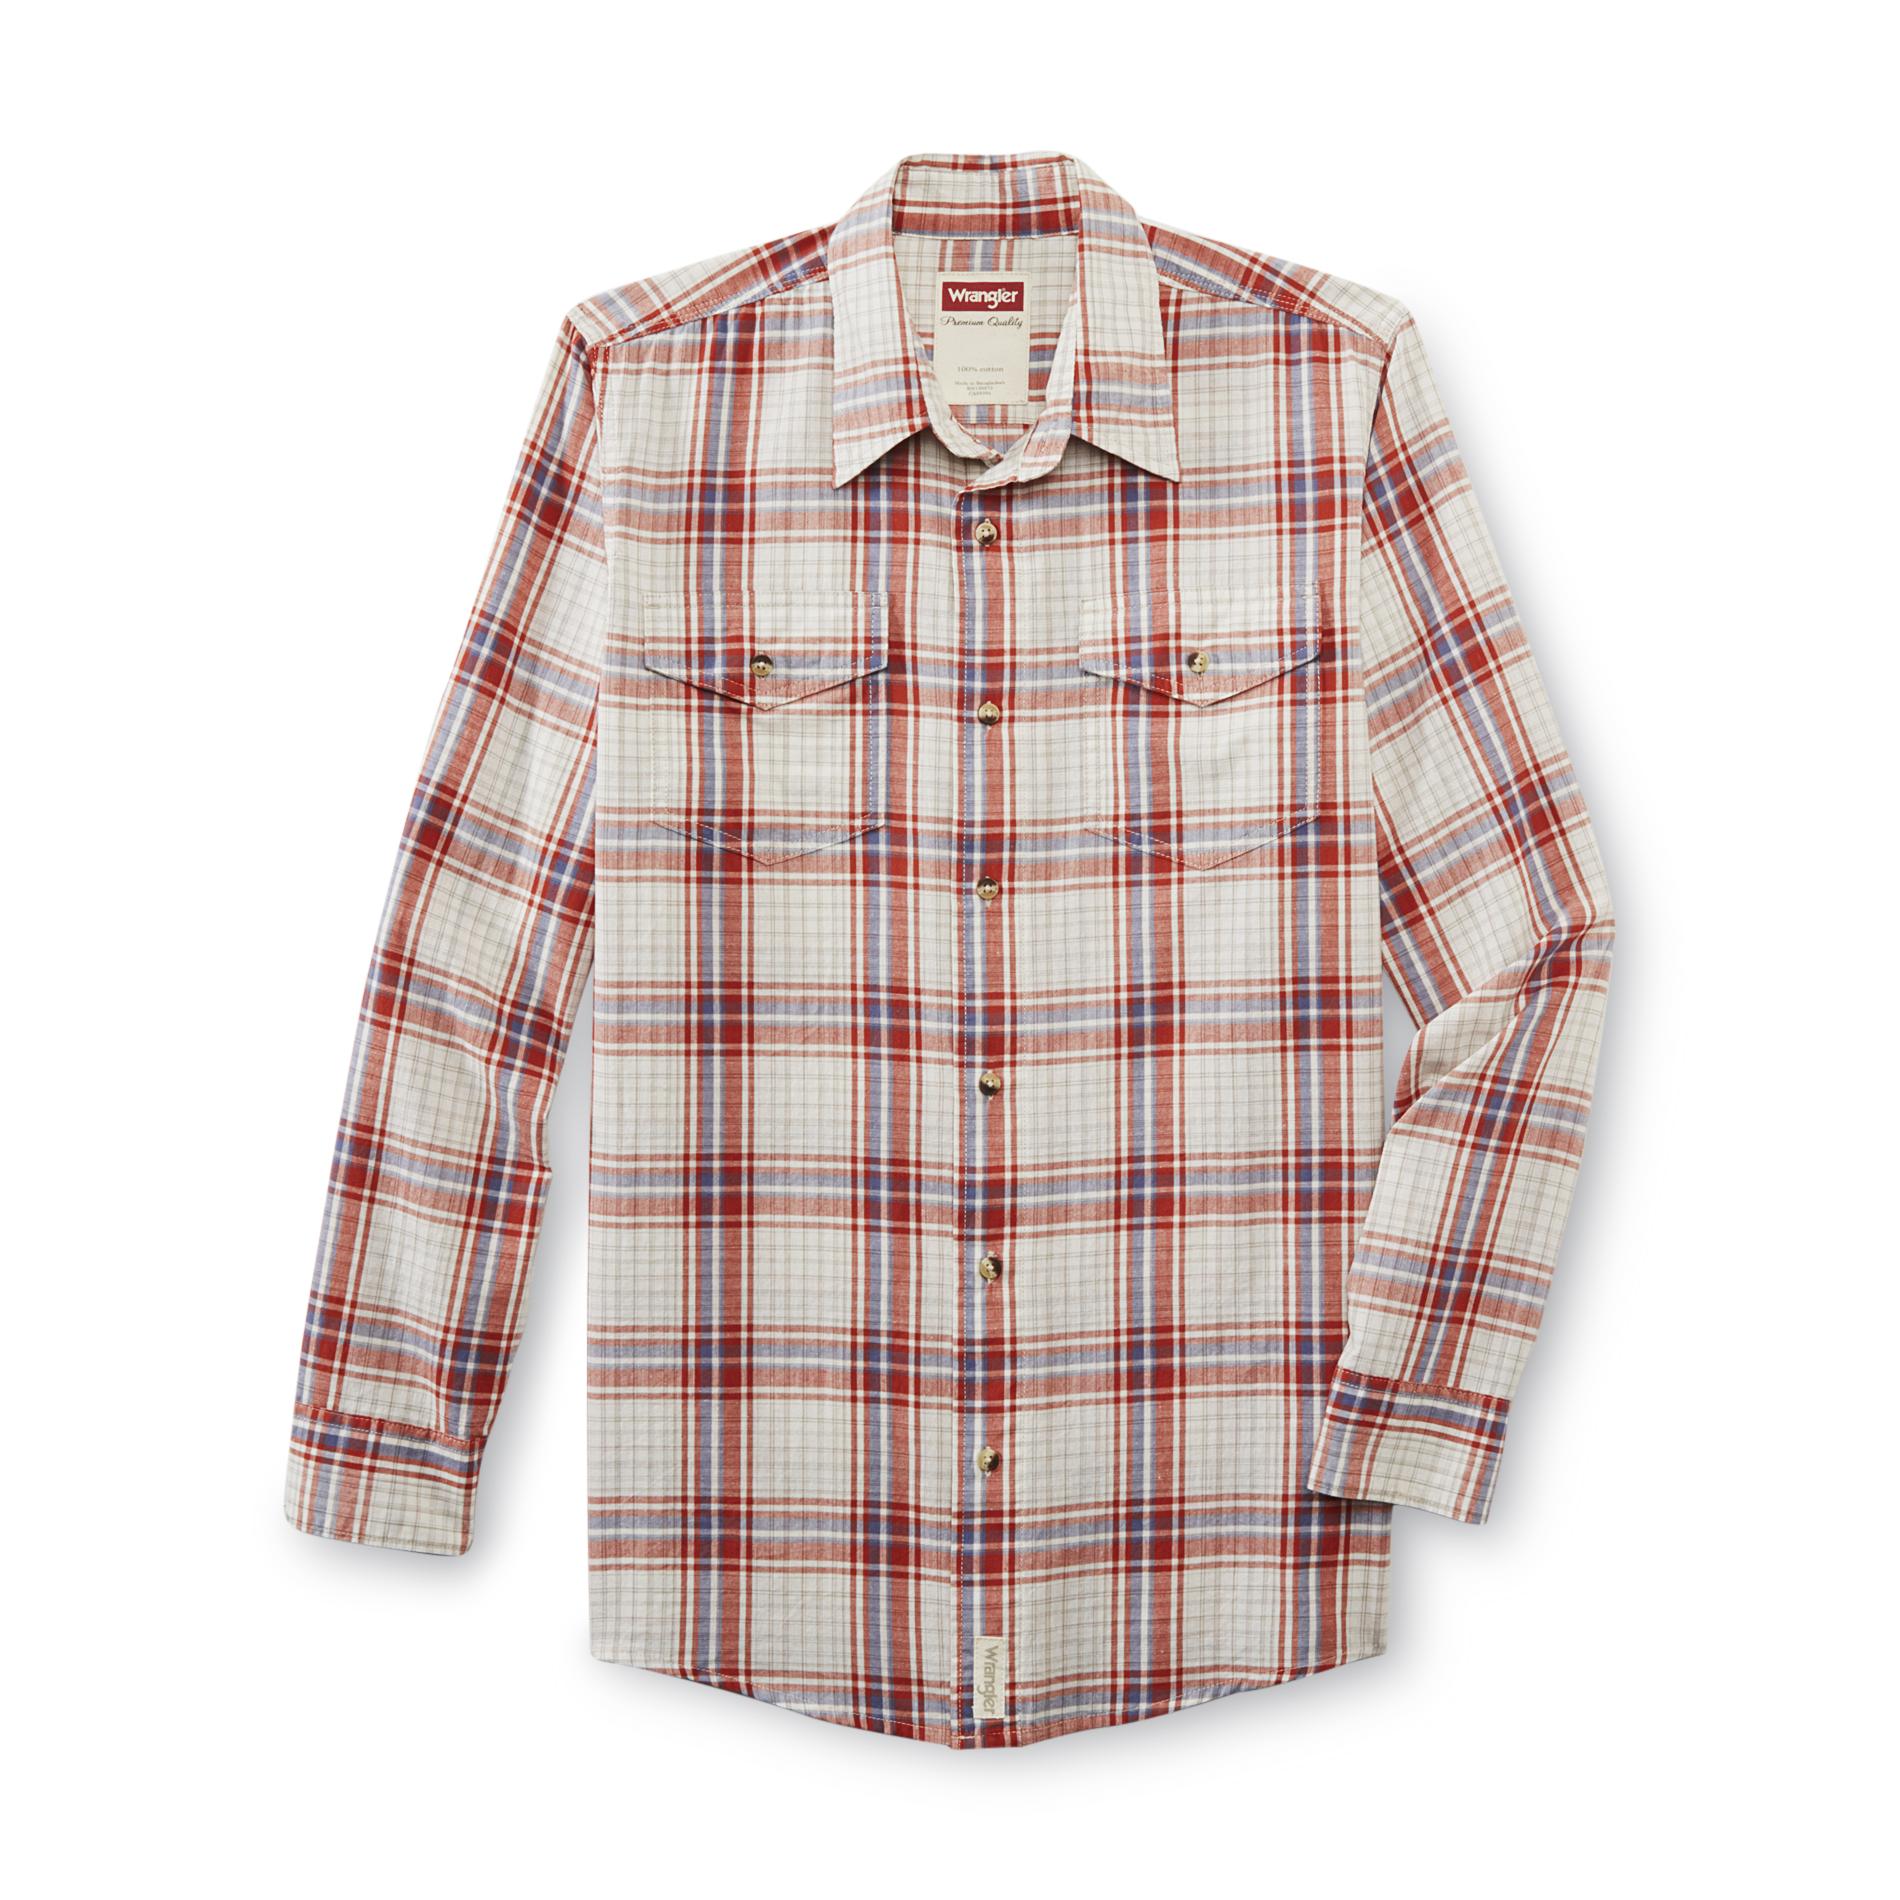 Wrangler Men's Long-Sleeve Shirt - Plaid